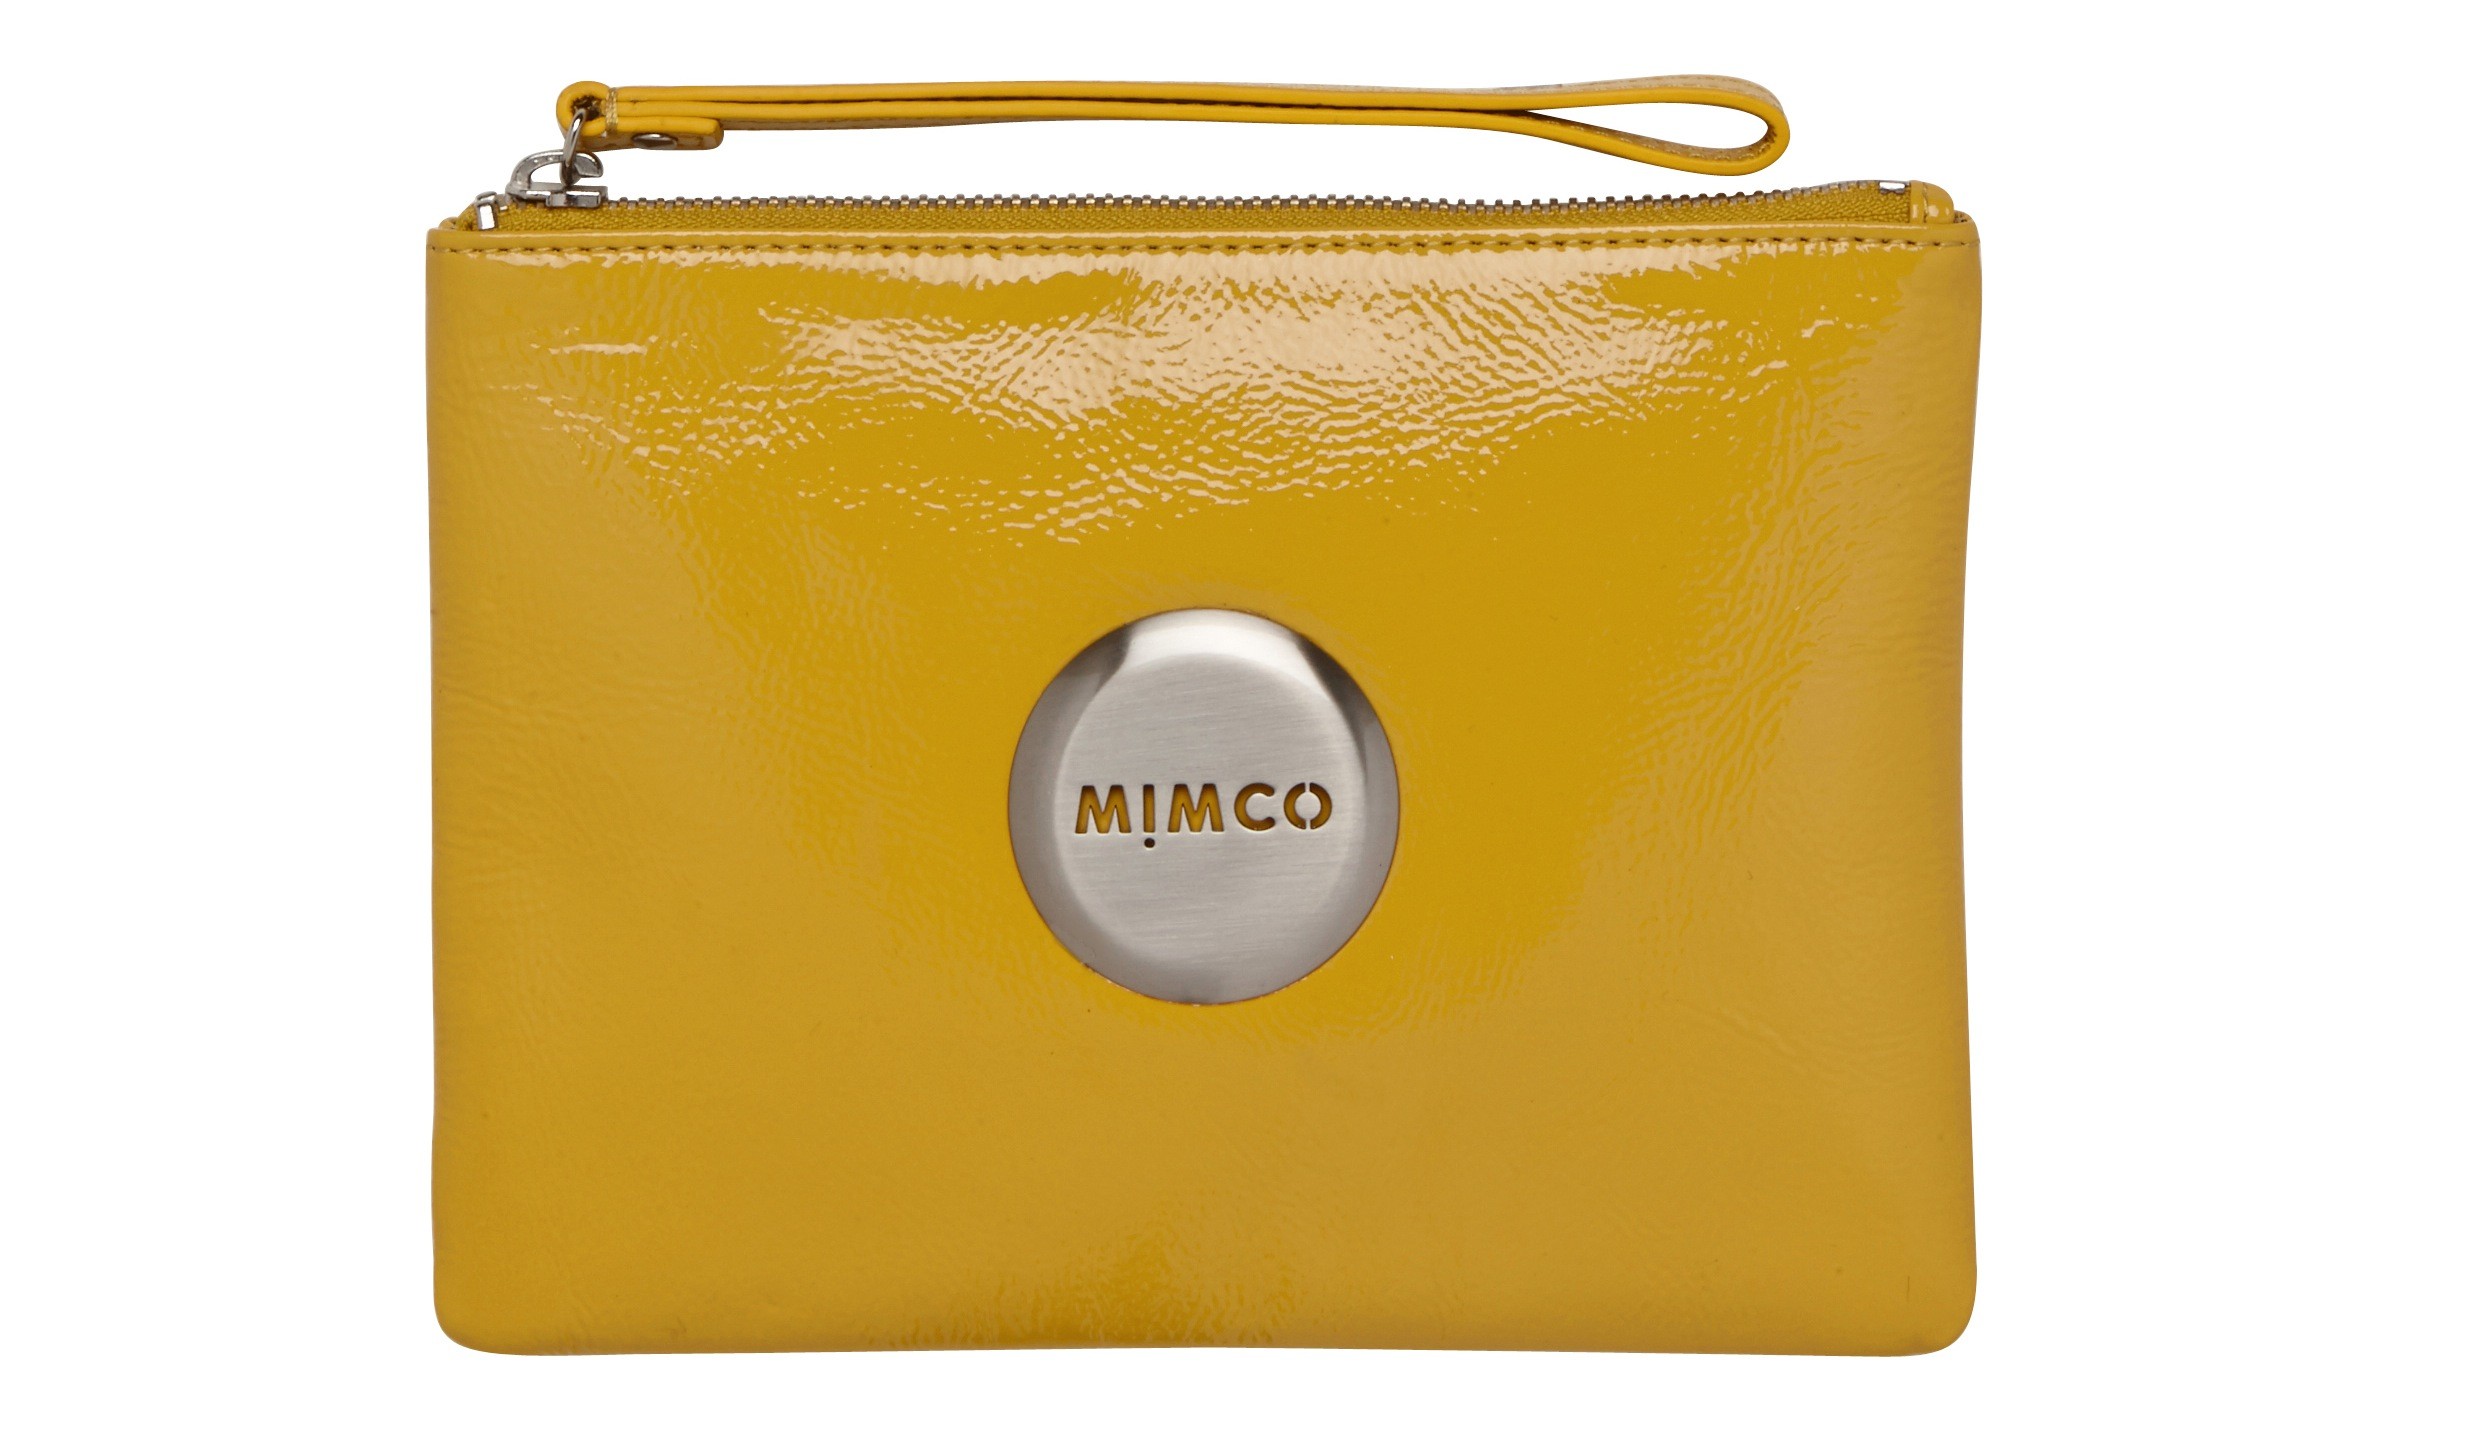 MIMCO Launches Their Spring/Summer Collection - RoXstar Earthgazer